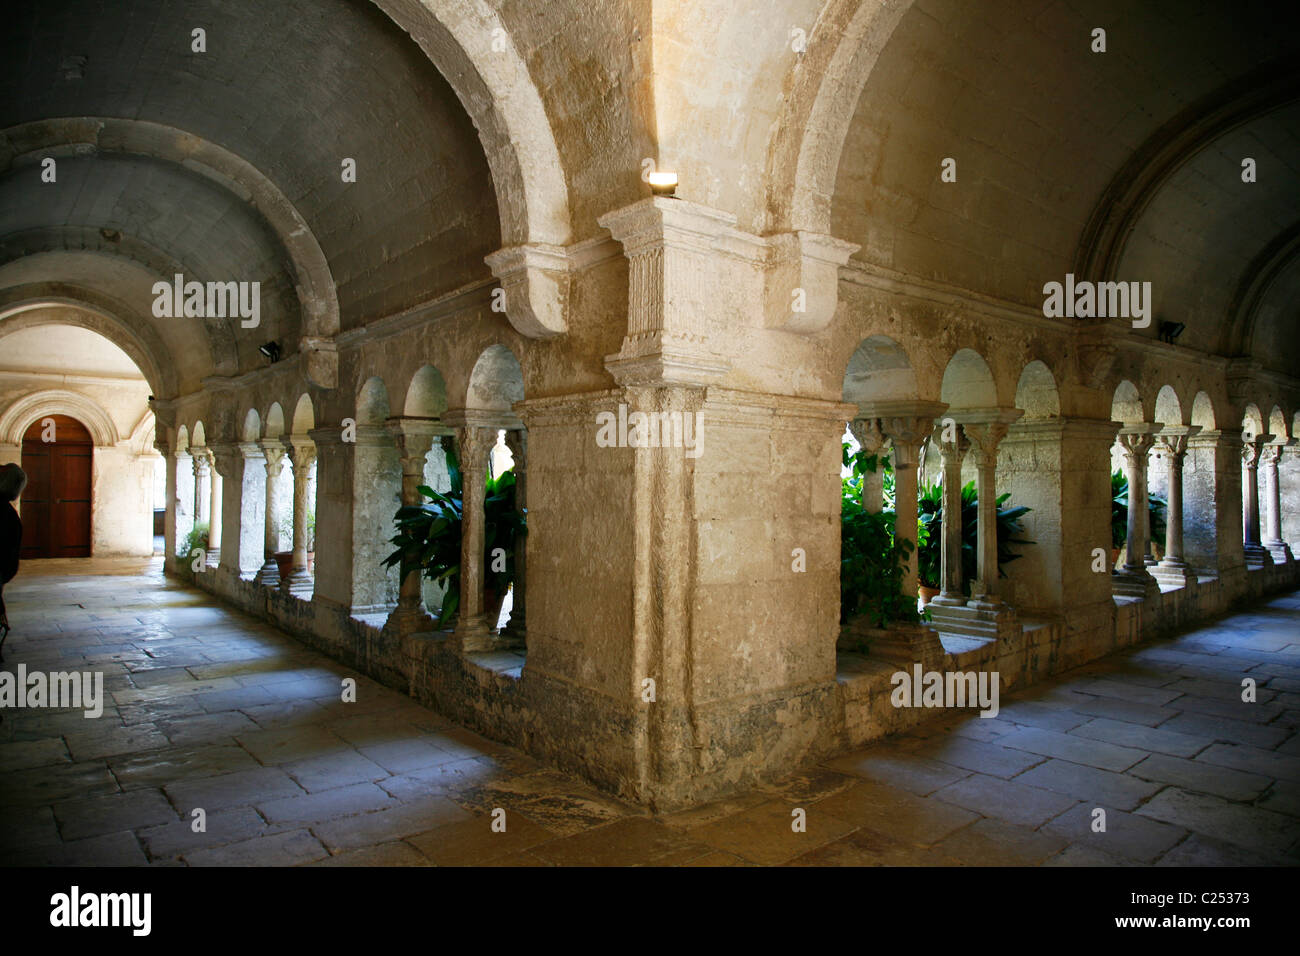 The cloister at St Paul de Mausole, St Remy de Provence, Buches du Rhone, Provence, France. Stock Photo